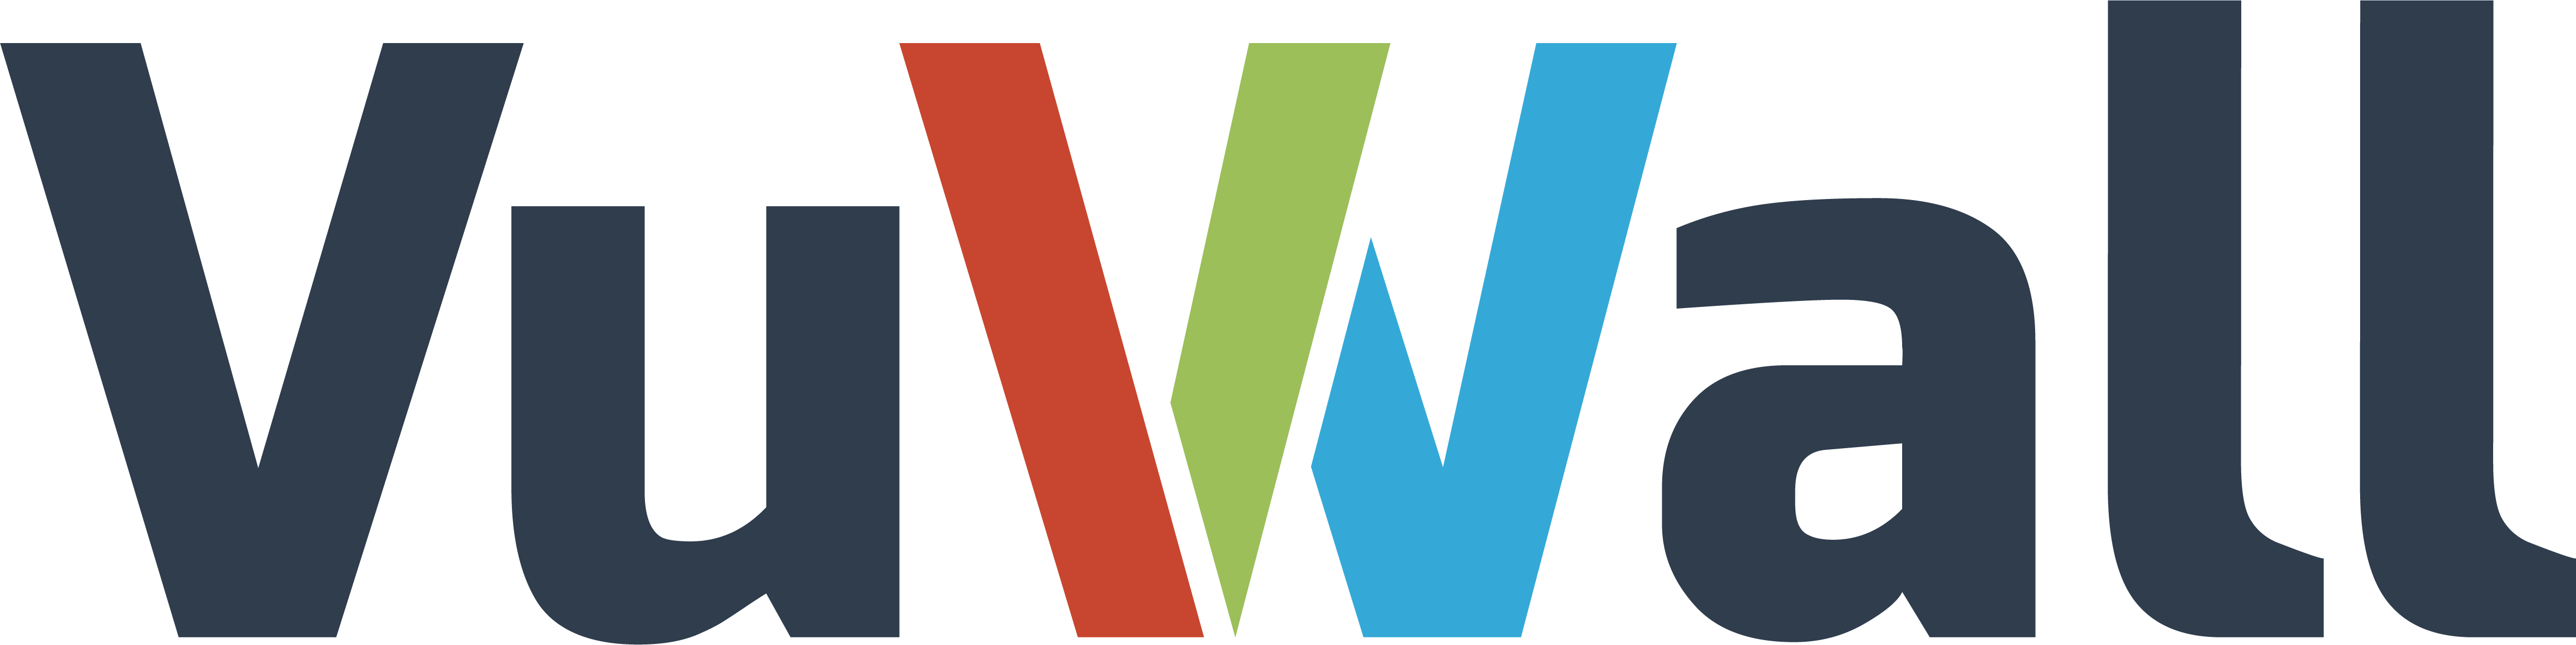 VuWall logo Partner Avent